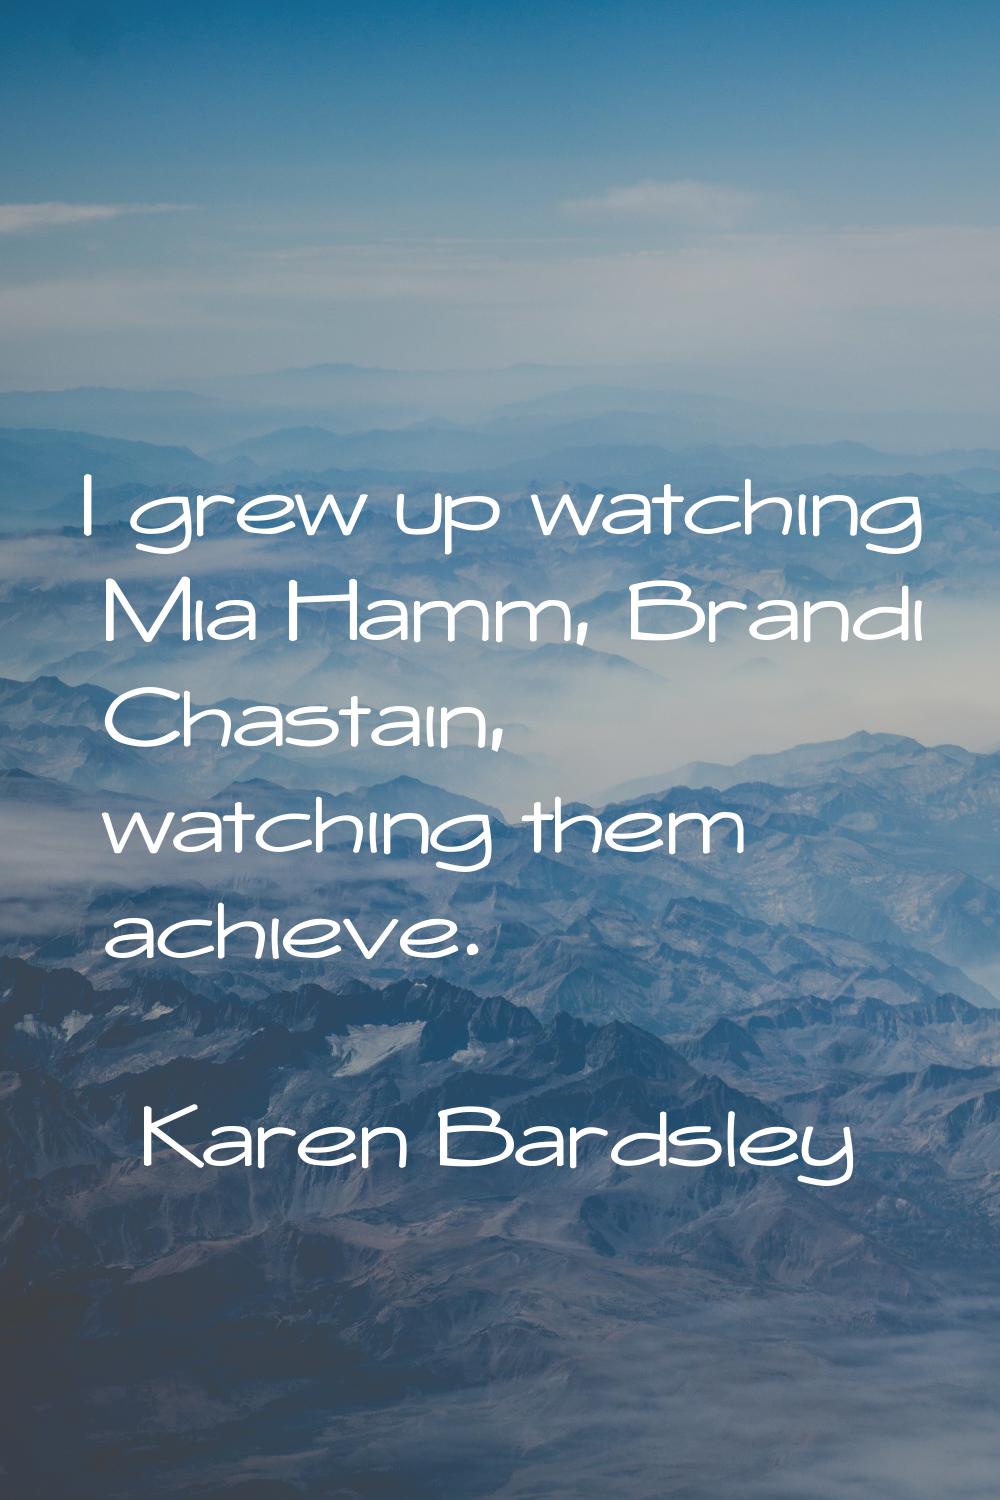 I grew up watching Mia Hamm, Brandi Chastain, watching them achieve.